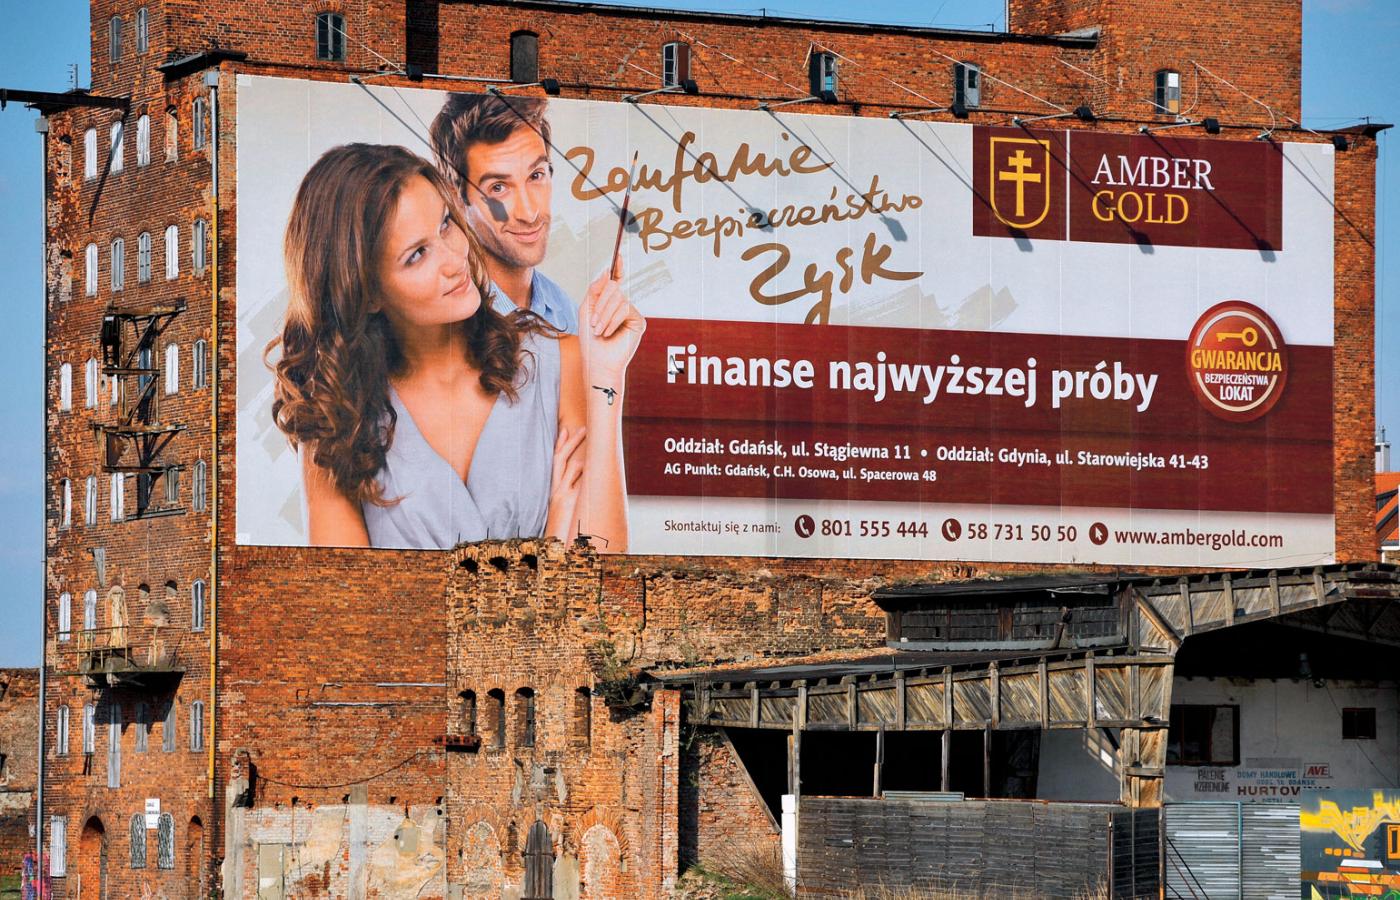 Amber Gold to najbardziej dziś znany w Polsce parabank. On sam i jemu podobne oferują Polakom to, czego nie mogą znaleźć w tradycyjnym systemie finansowym.